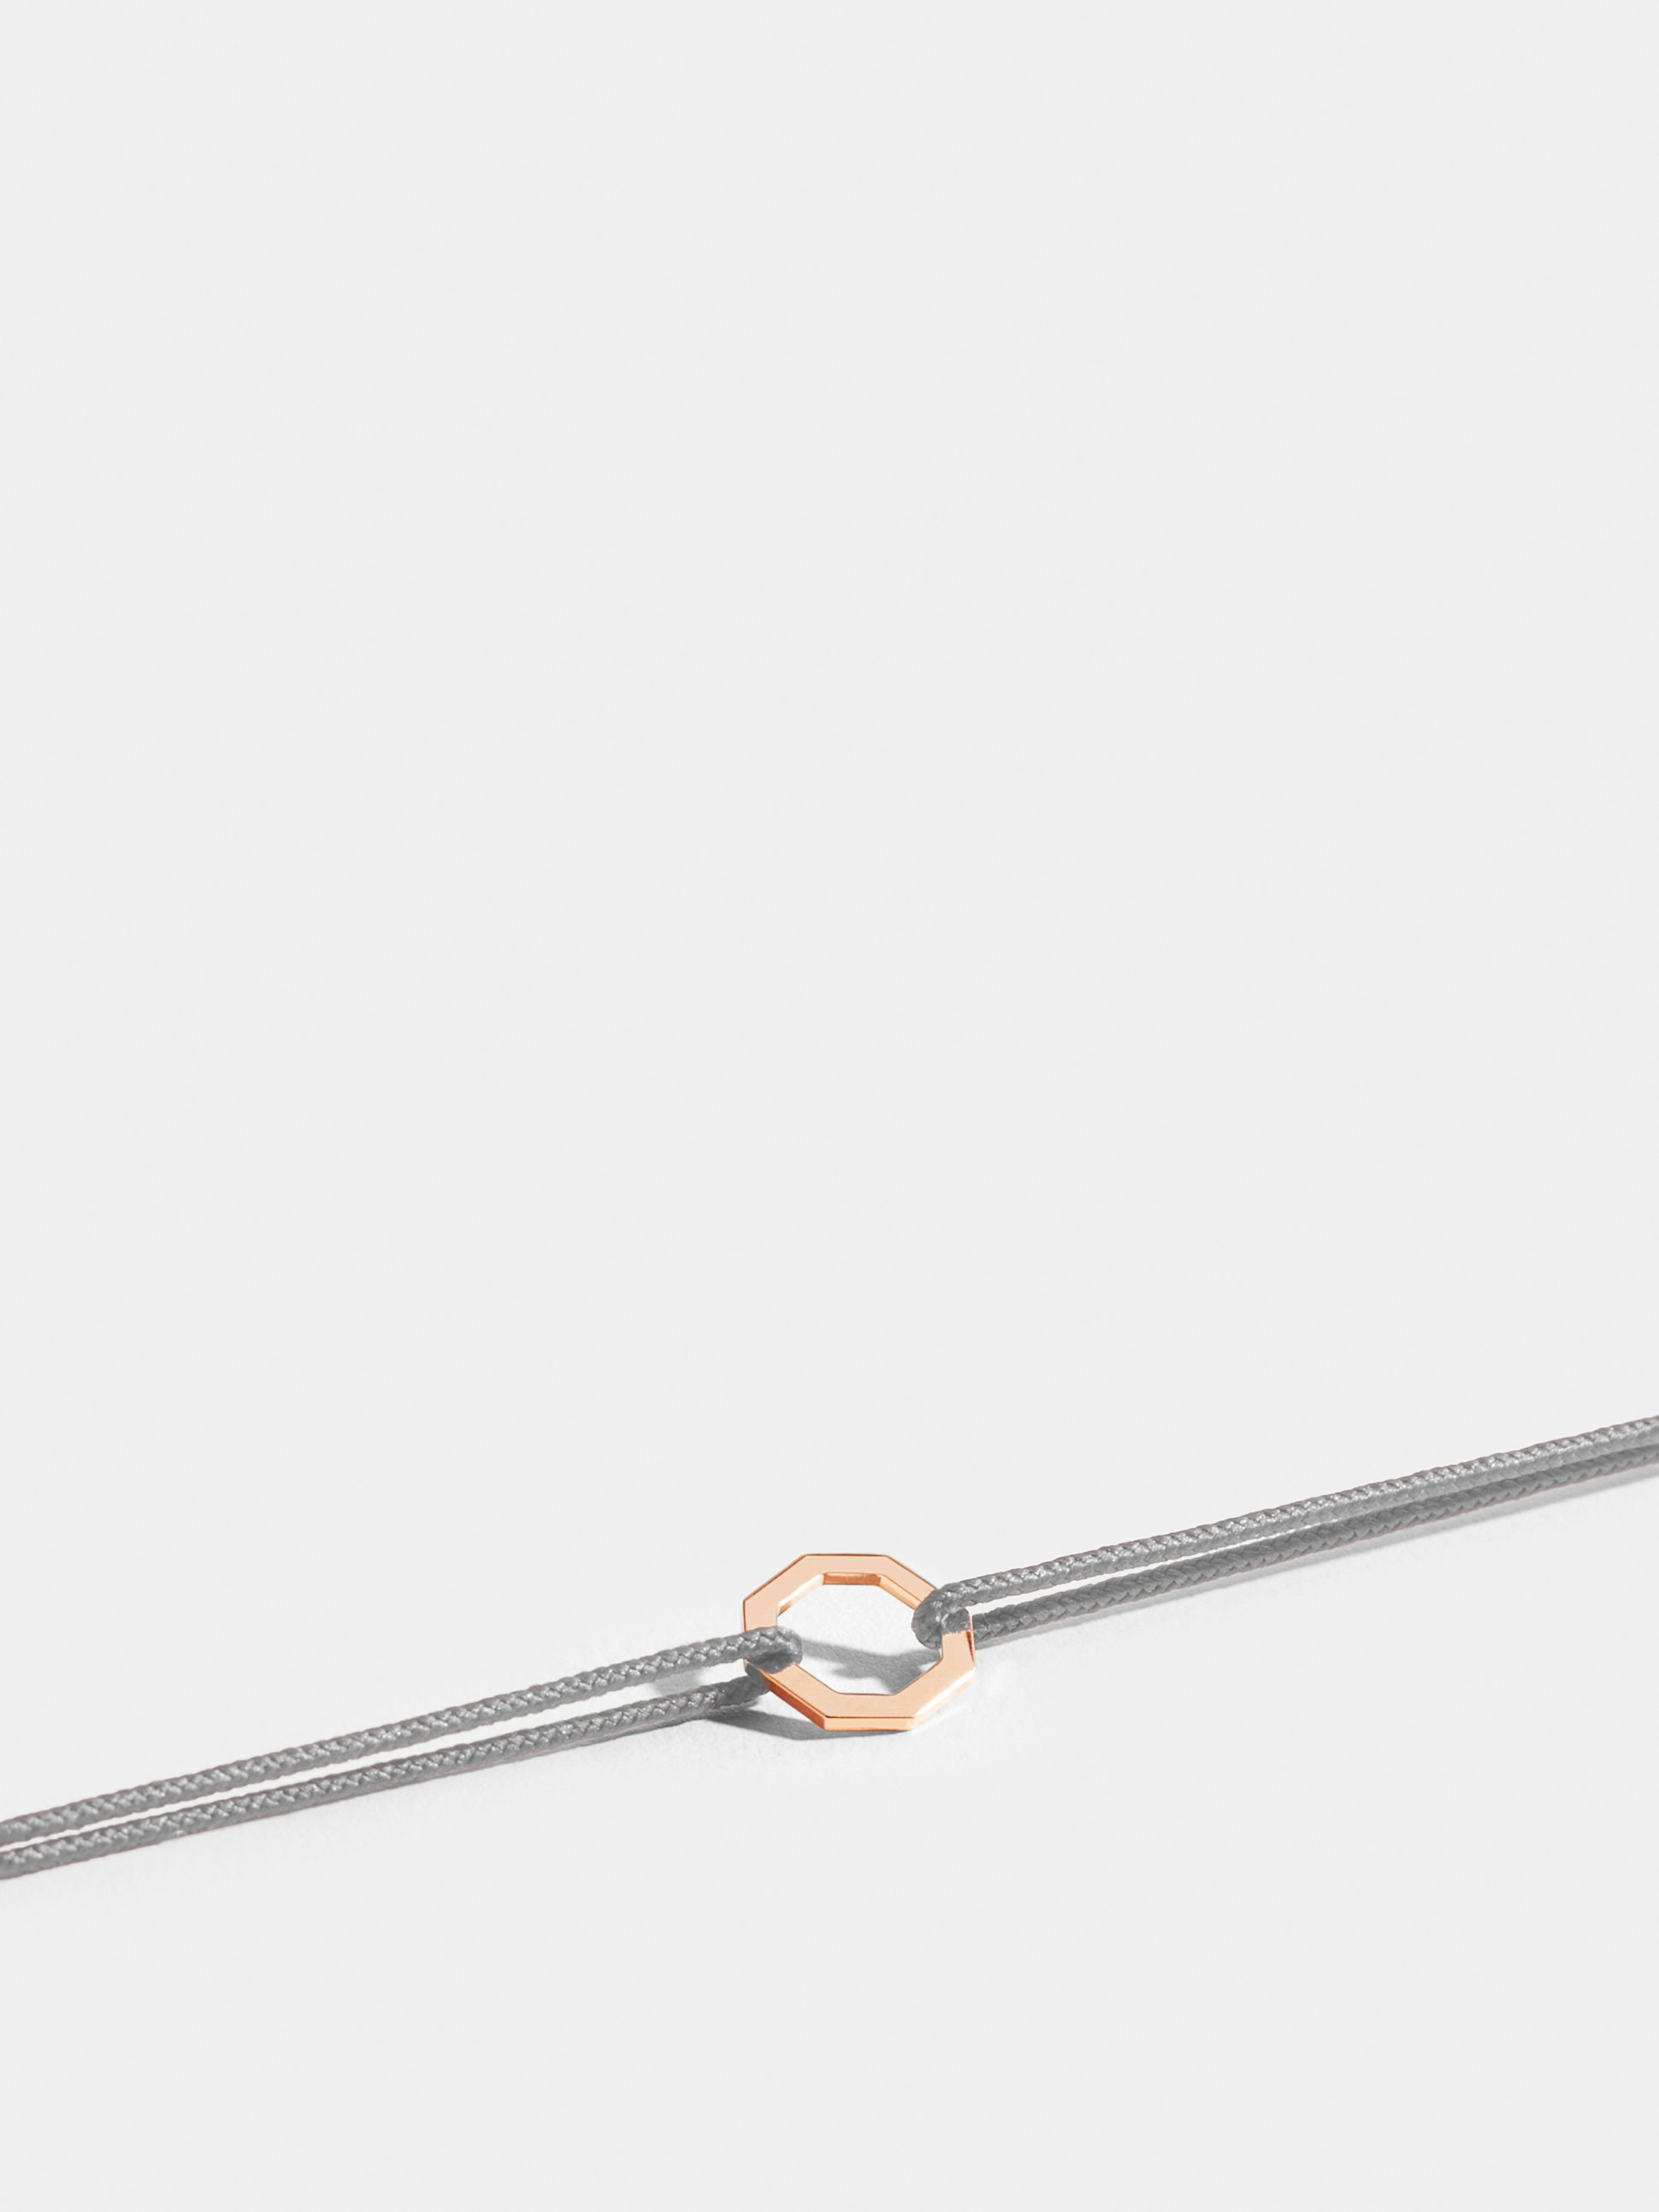 Motif Octogone en Or rose éthique 18 carats certifié Fairmined, sur cordon gris perlé.